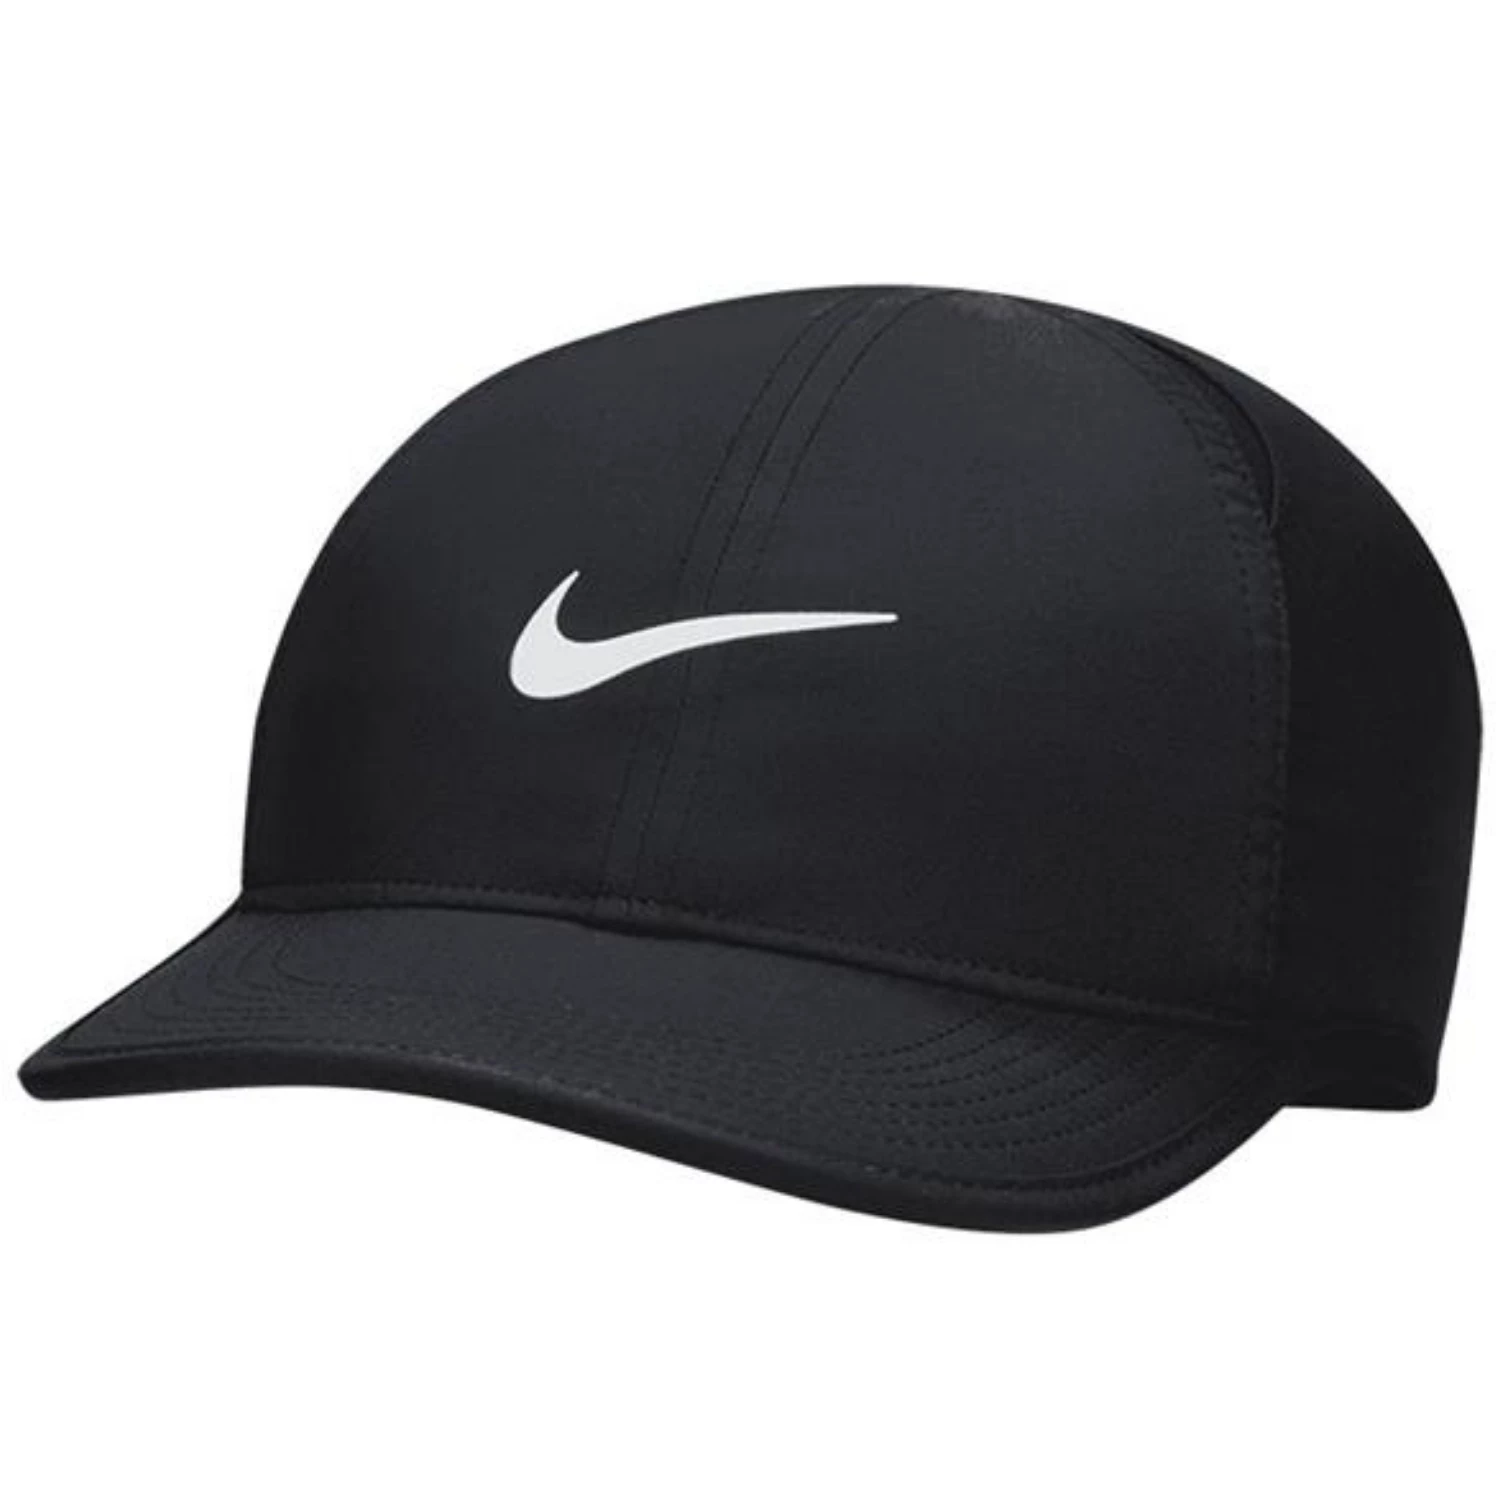 Nike pet / cap